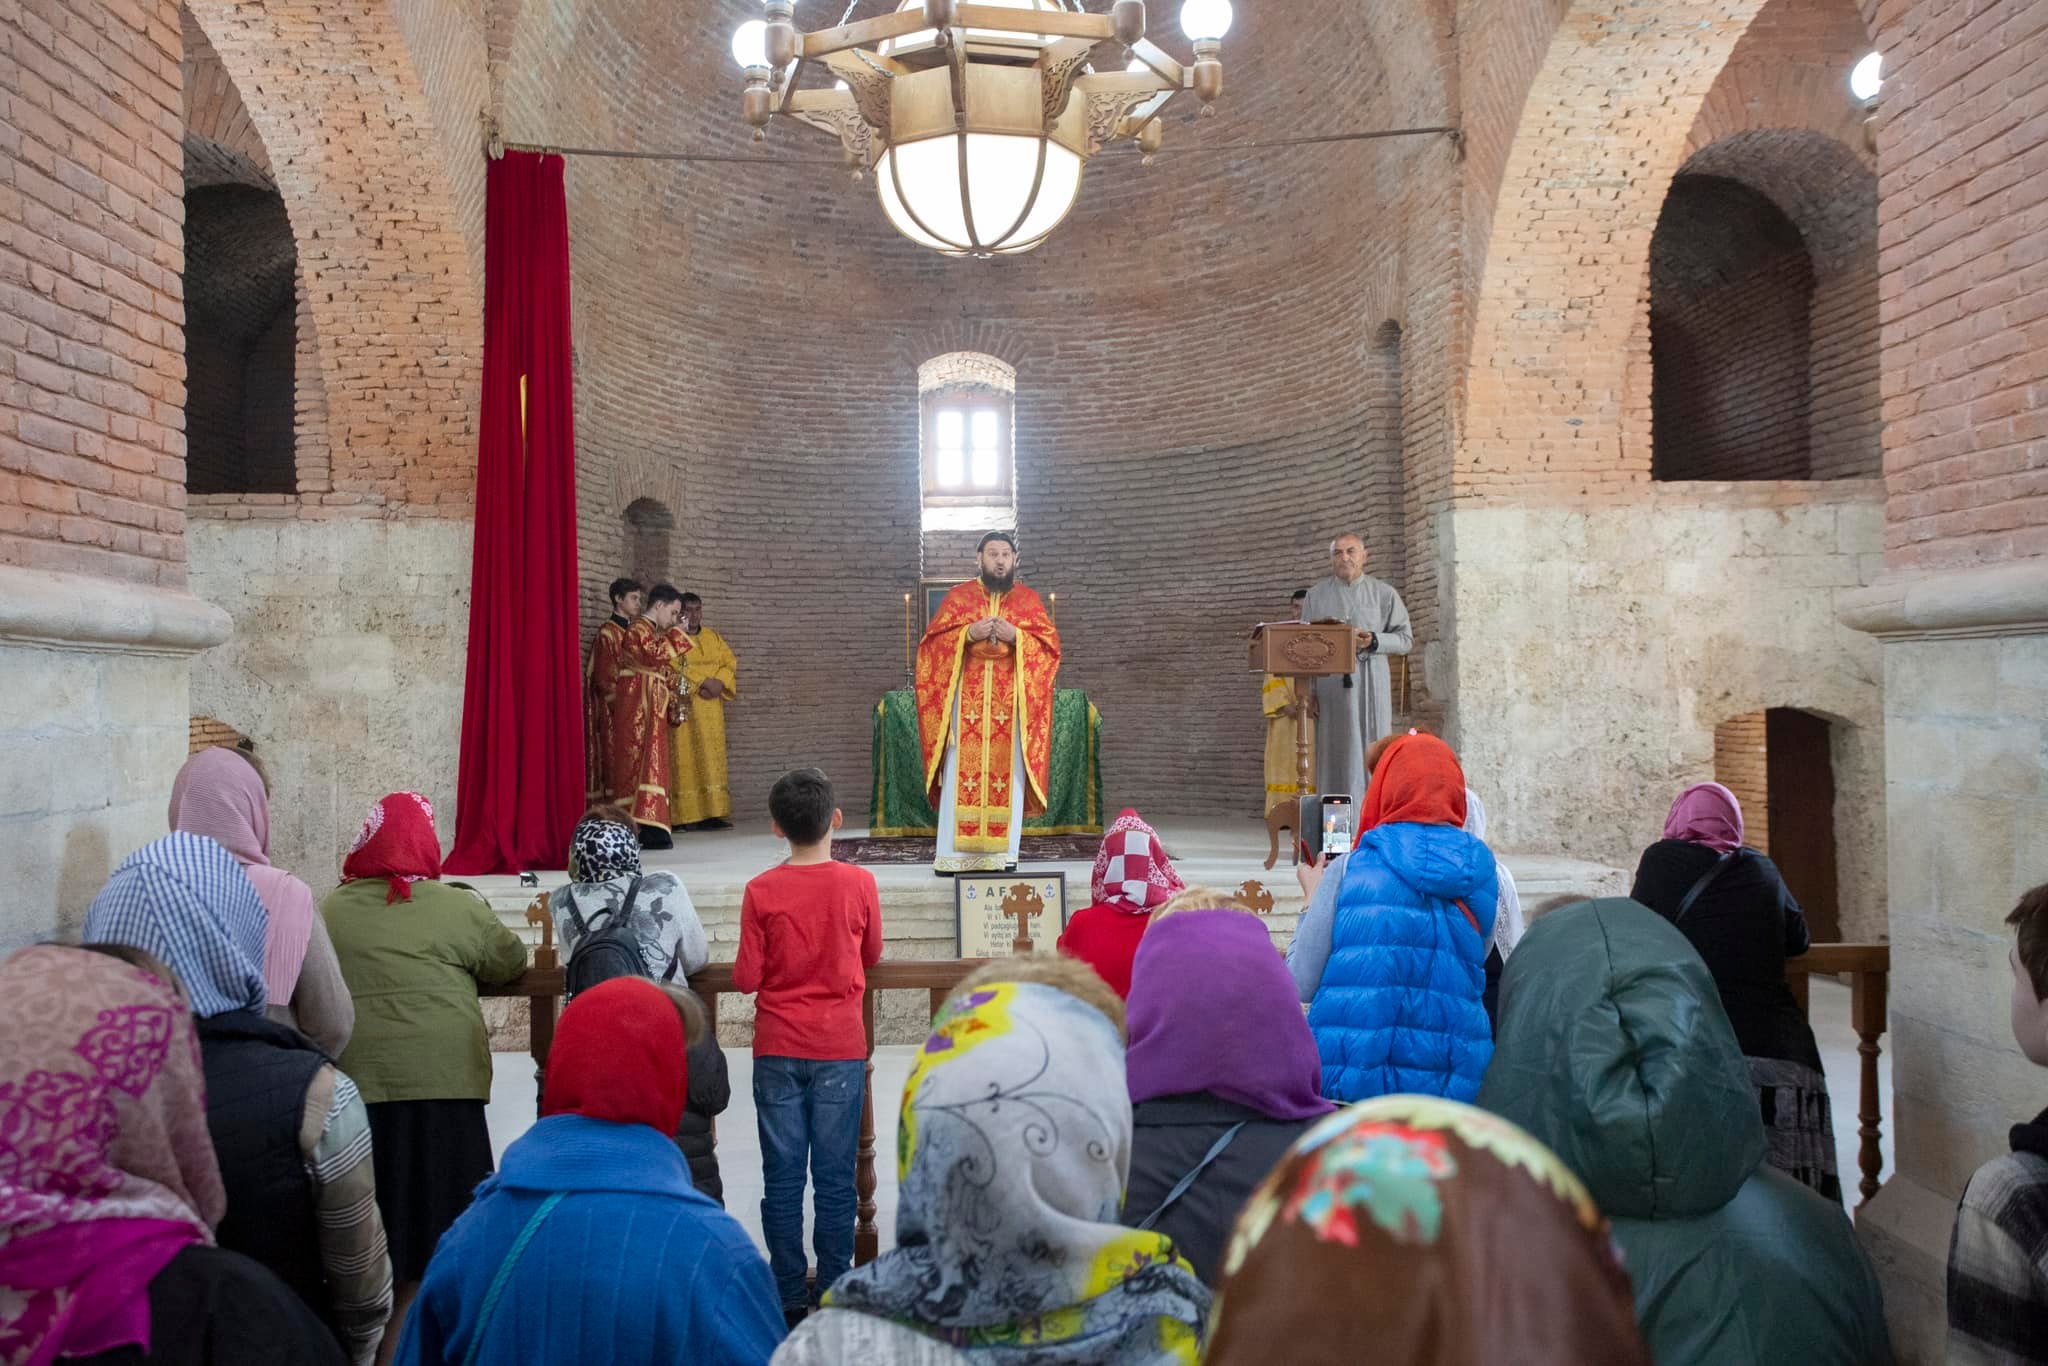 В воскресенье 4-ое по Пасхе в Азербайджане отмечается память святого Елисея.